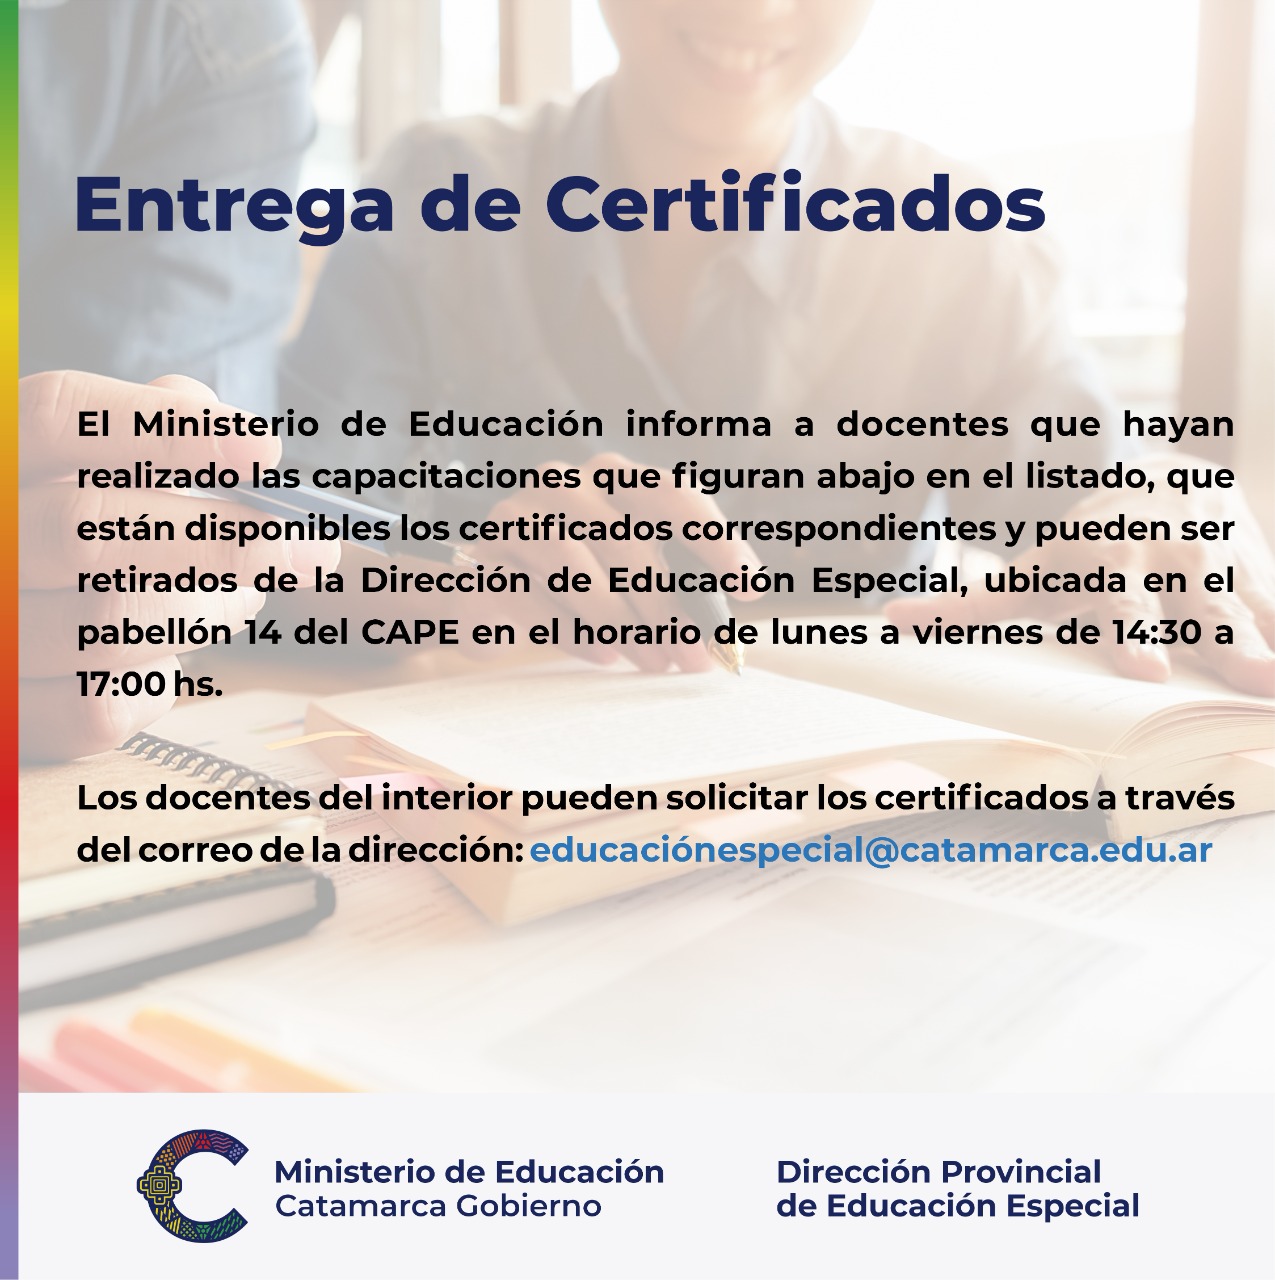 Entrega de certificados educ especial